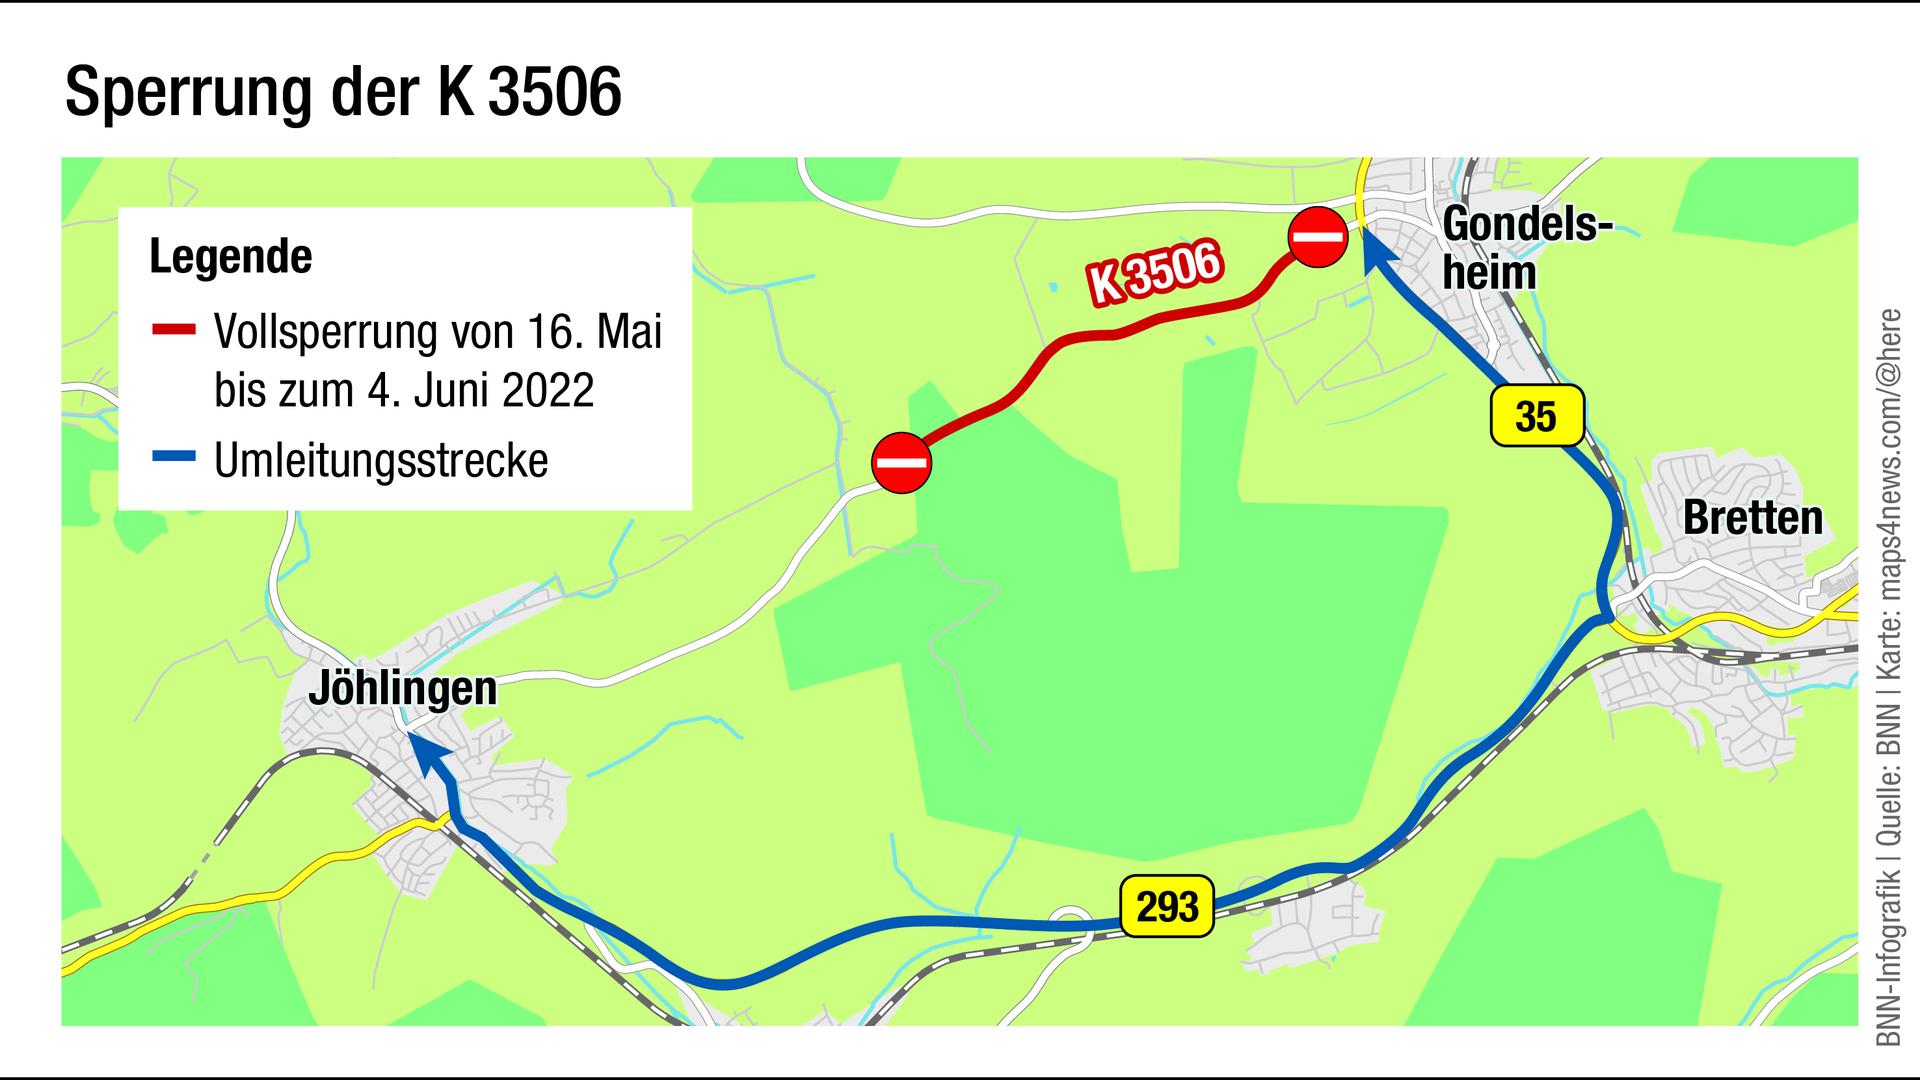 Vollsperrung der K3506 zwischen Jöhlingen und Gondelsheim 